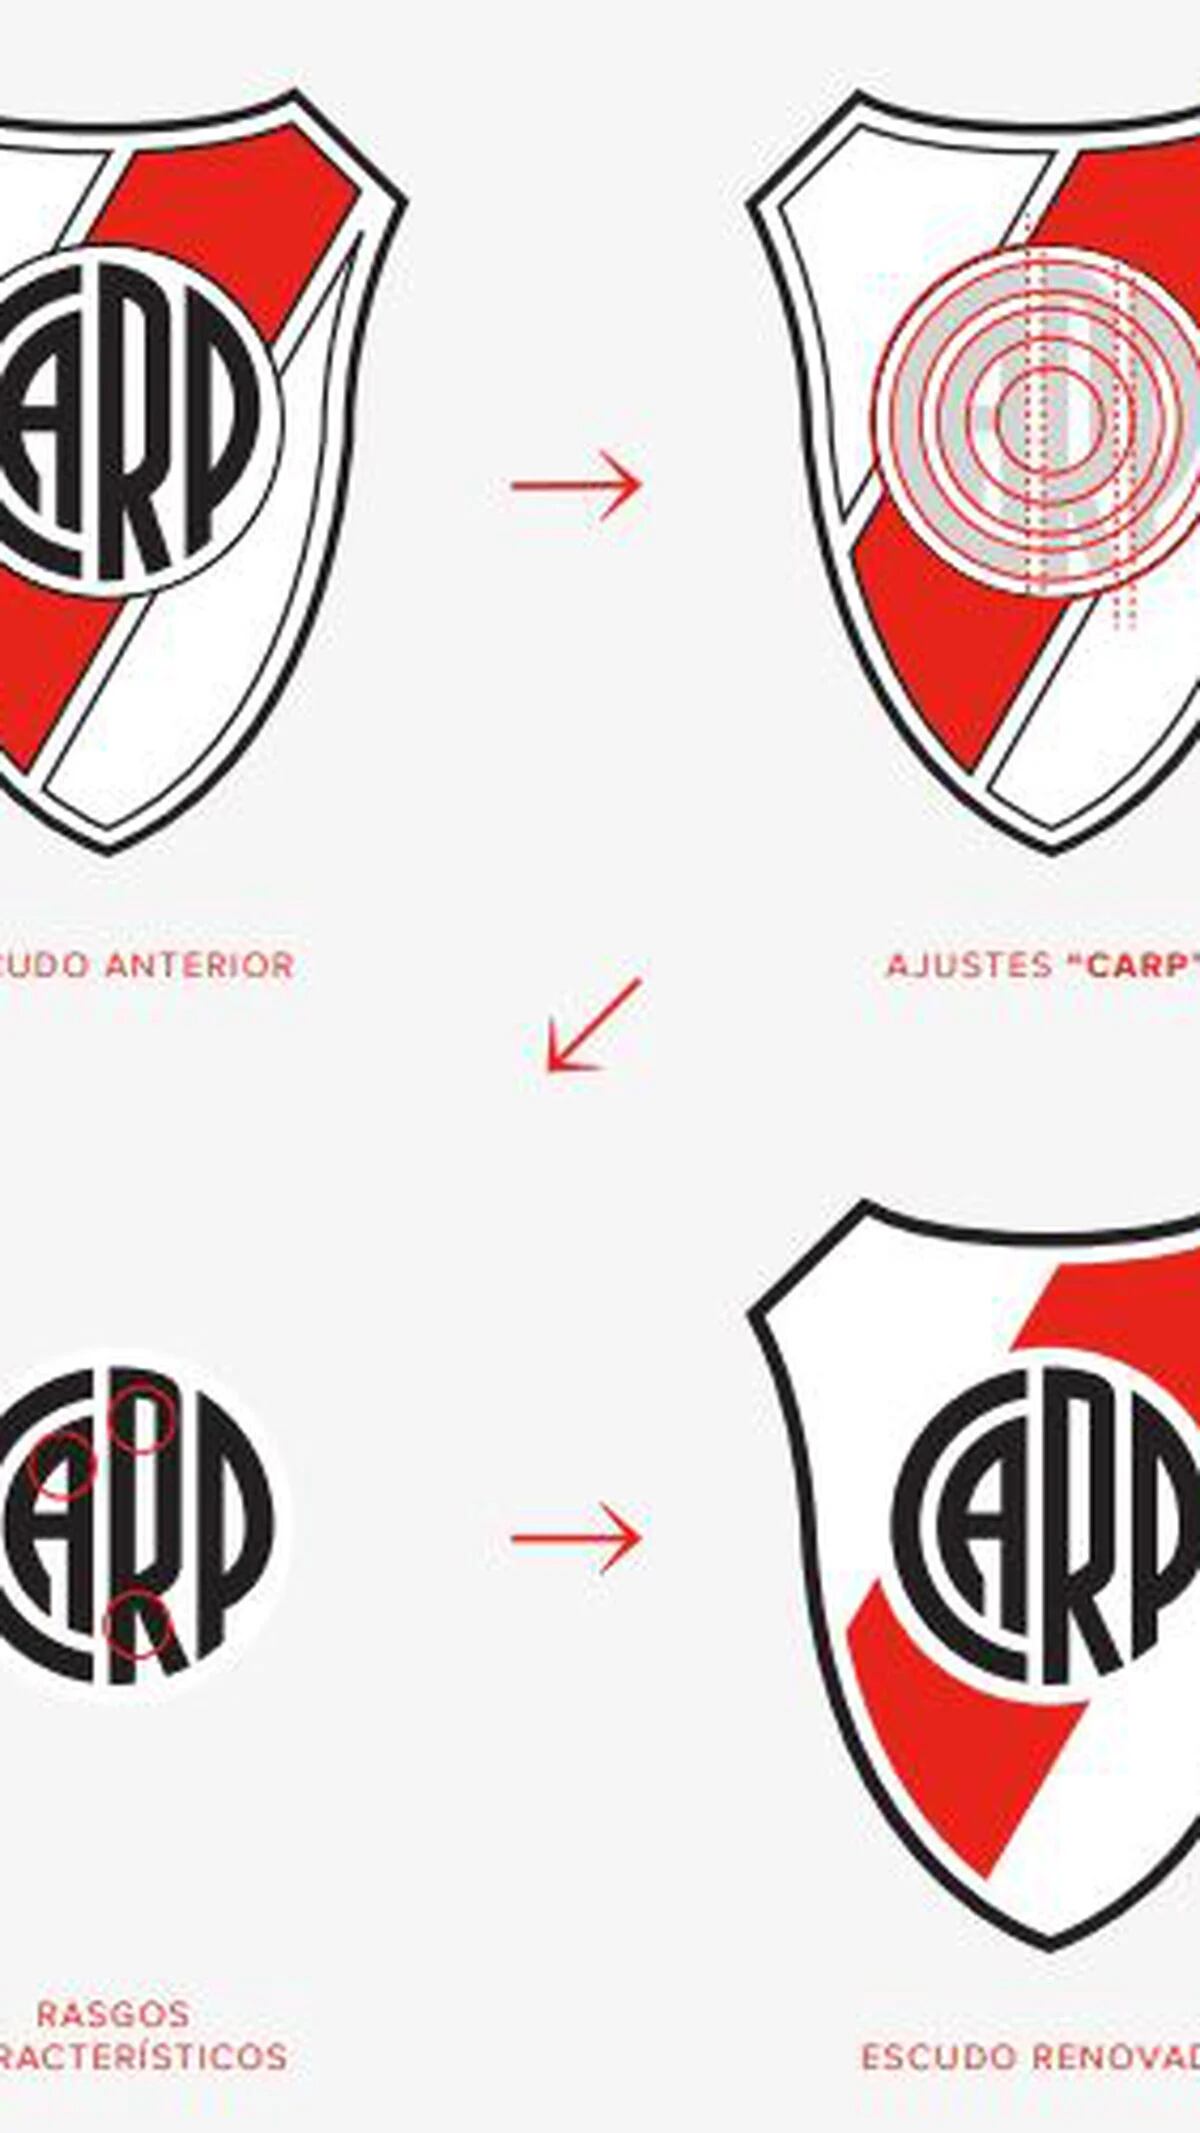 Nuevo escudo del River Plate. Un histórico que sintetiza sus formas